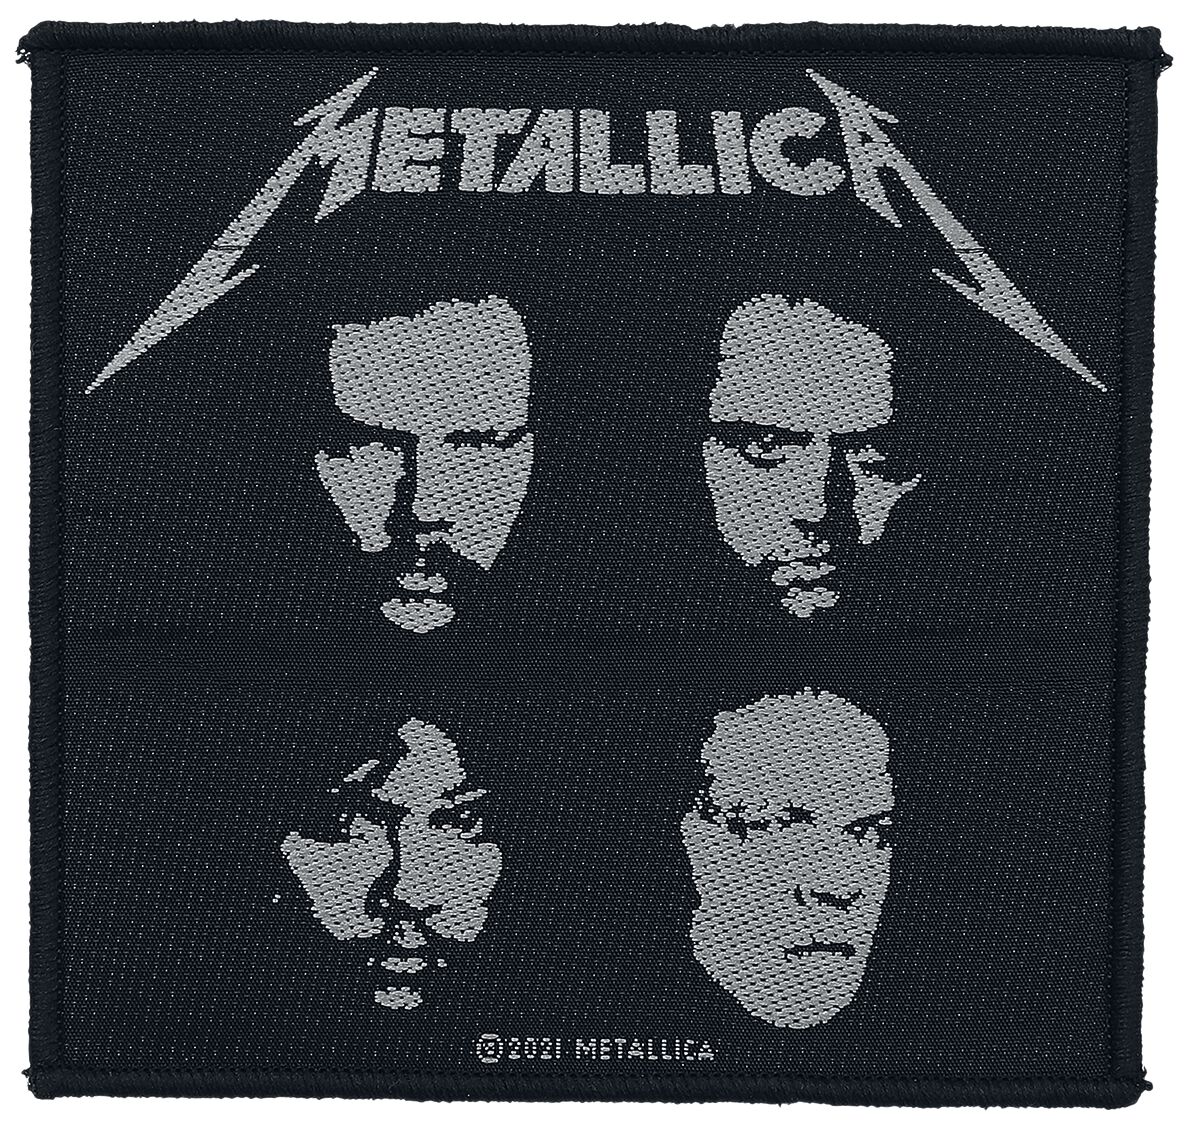 Black album, Metallica Parche